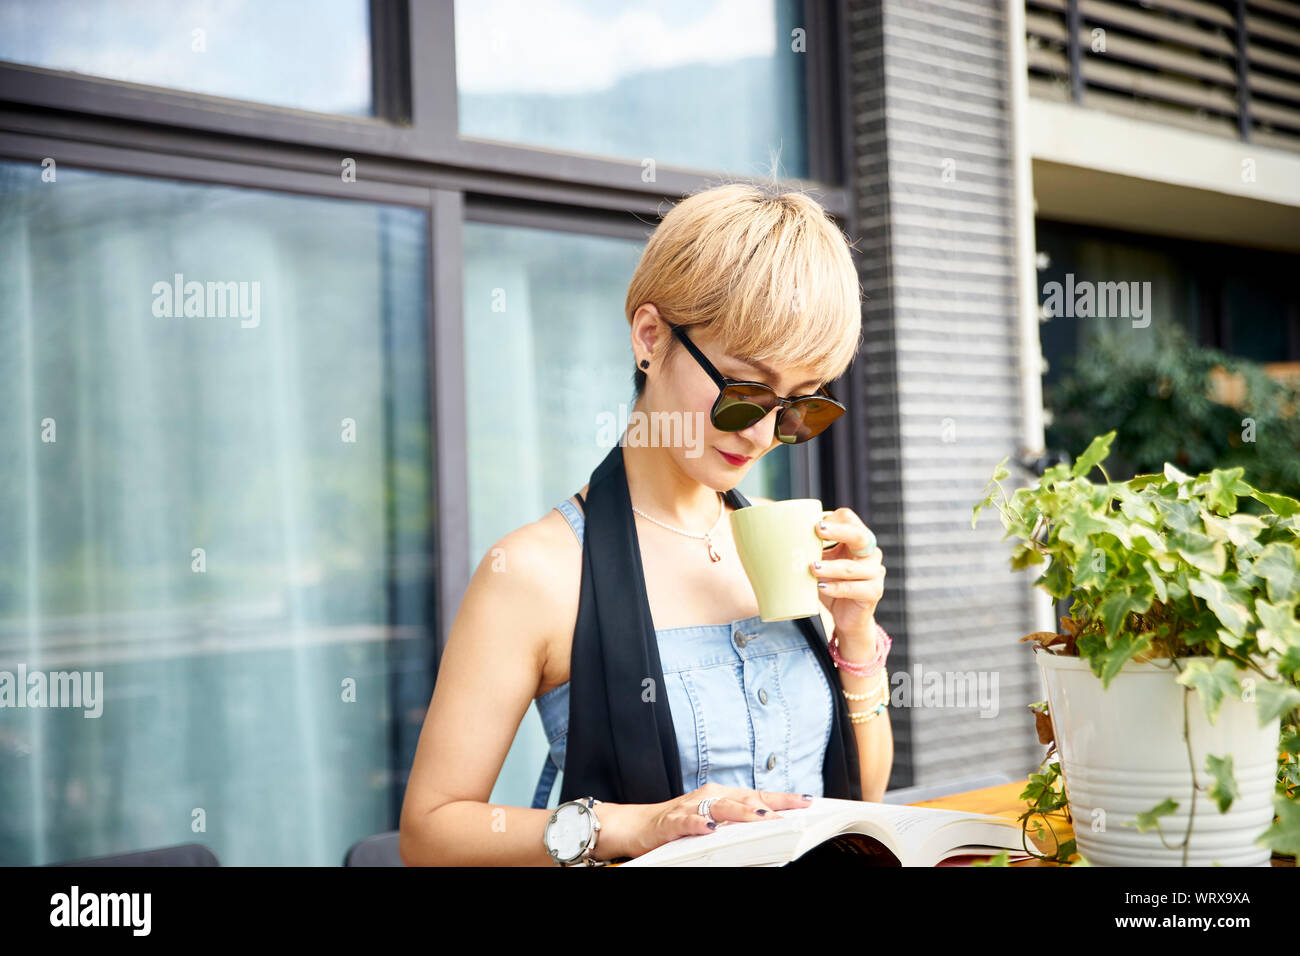 Young Asian woman enjoying reading et le café on patio Banque D'Images